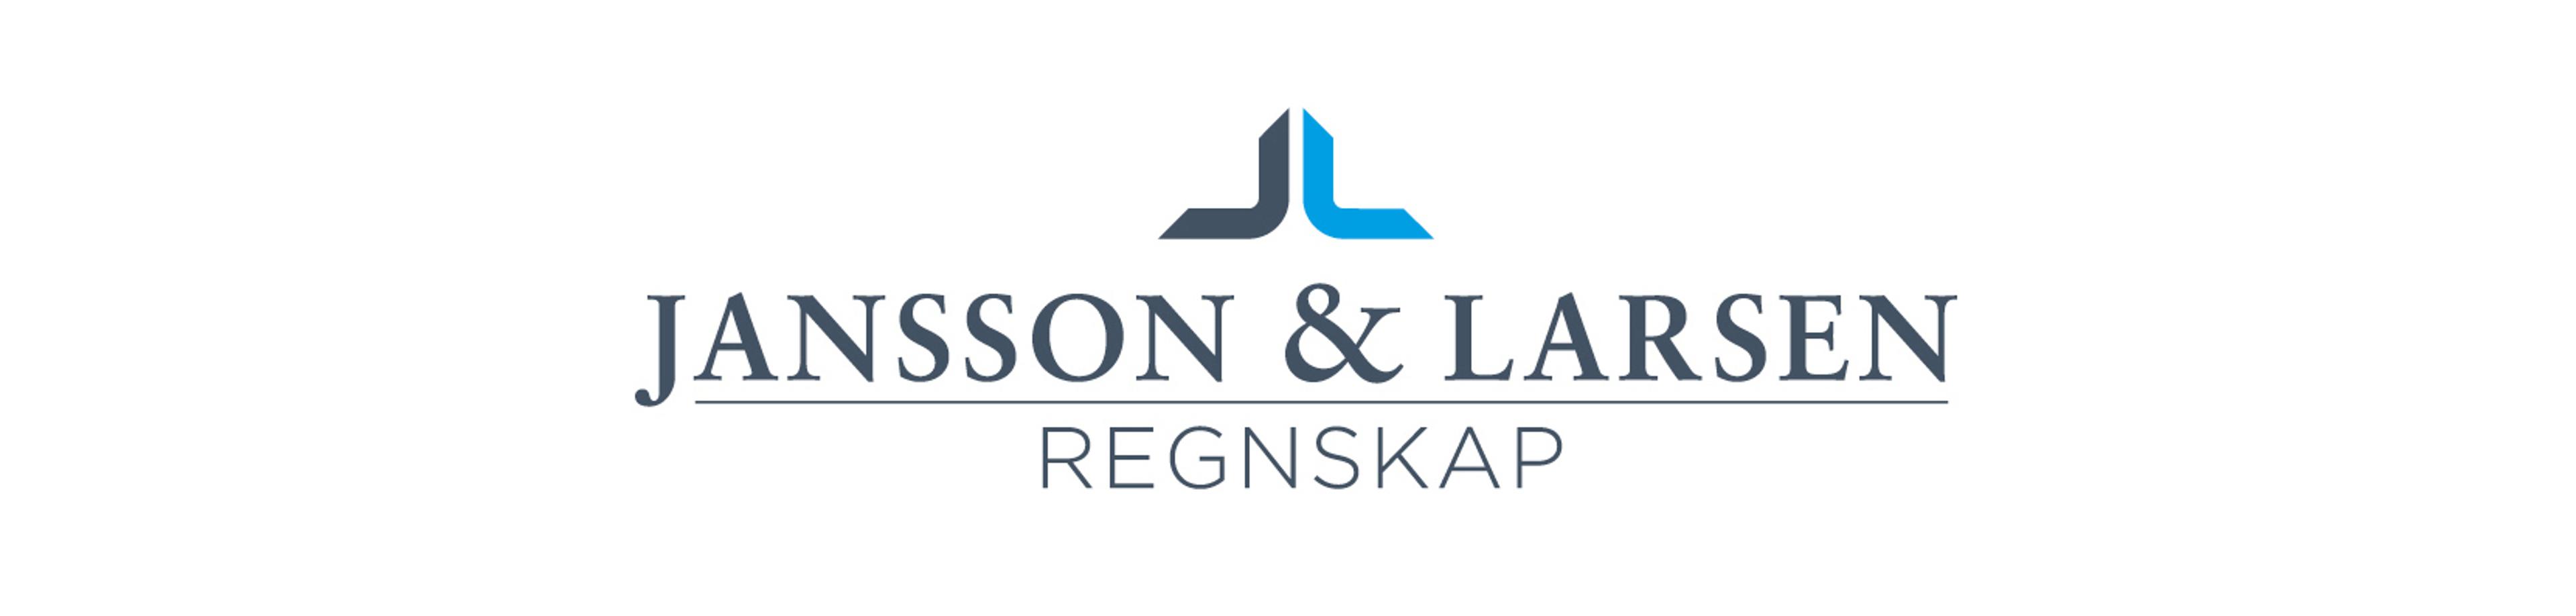 Jansson & Larsen regnskap